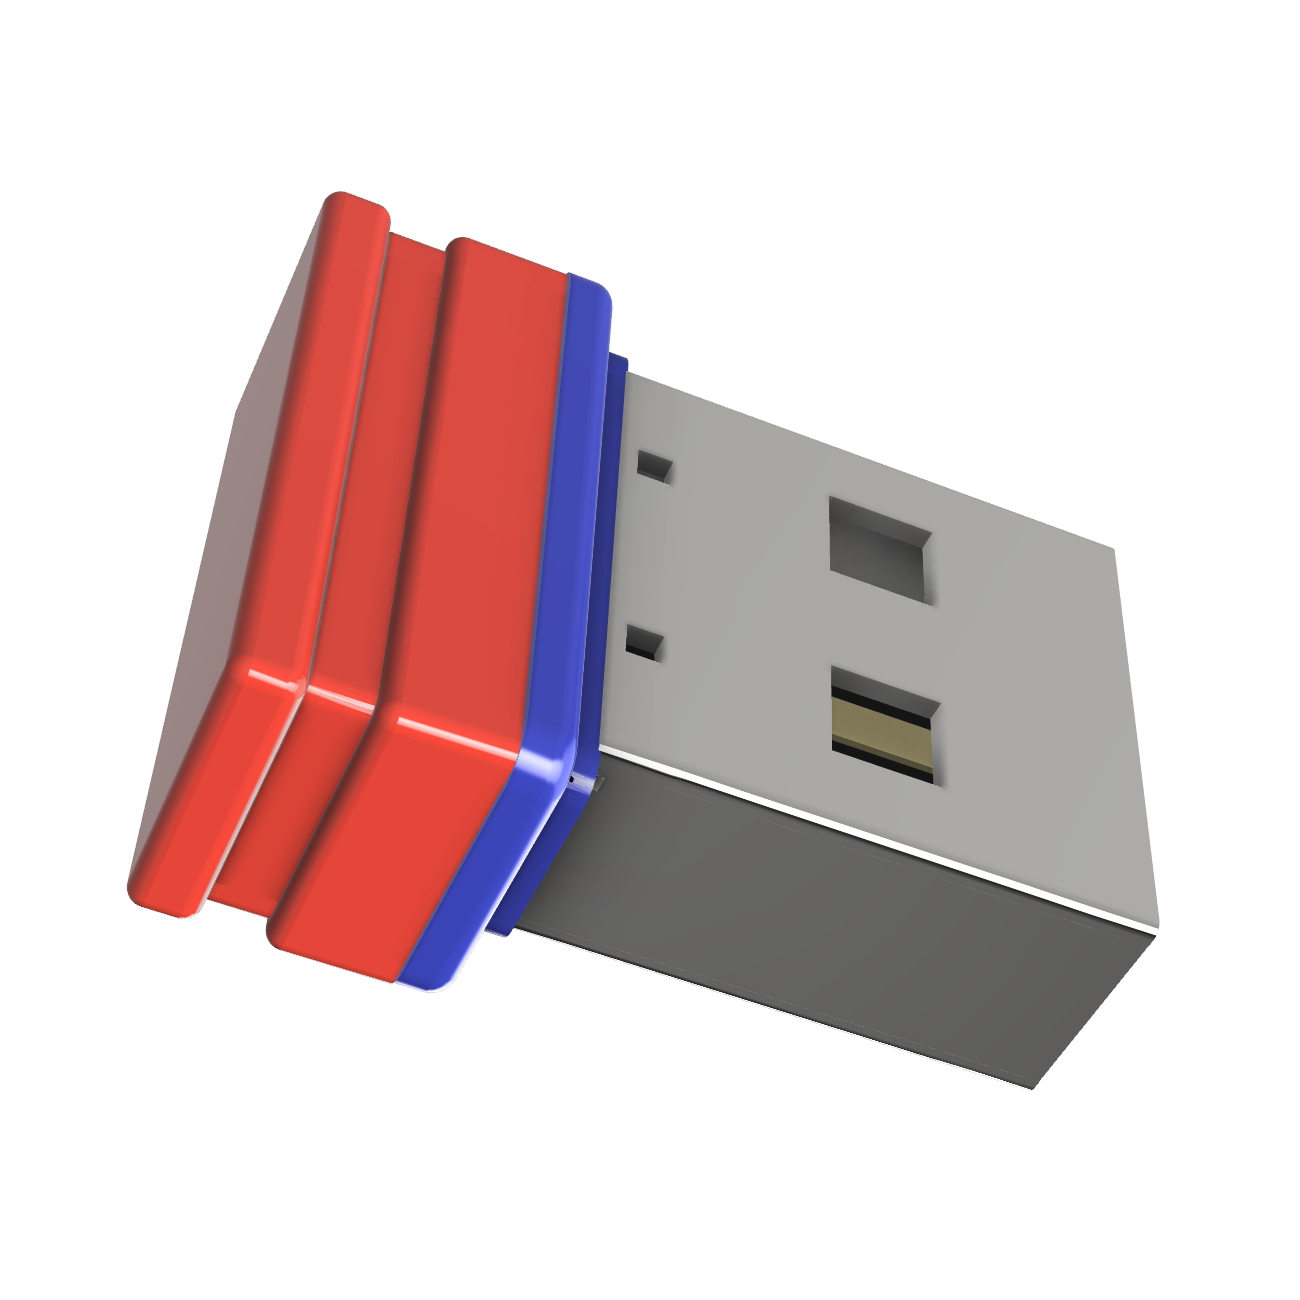 P1 Mini GB) 8 USB-Stick ®ULTRA GERMANY (Rot/Blau, USB